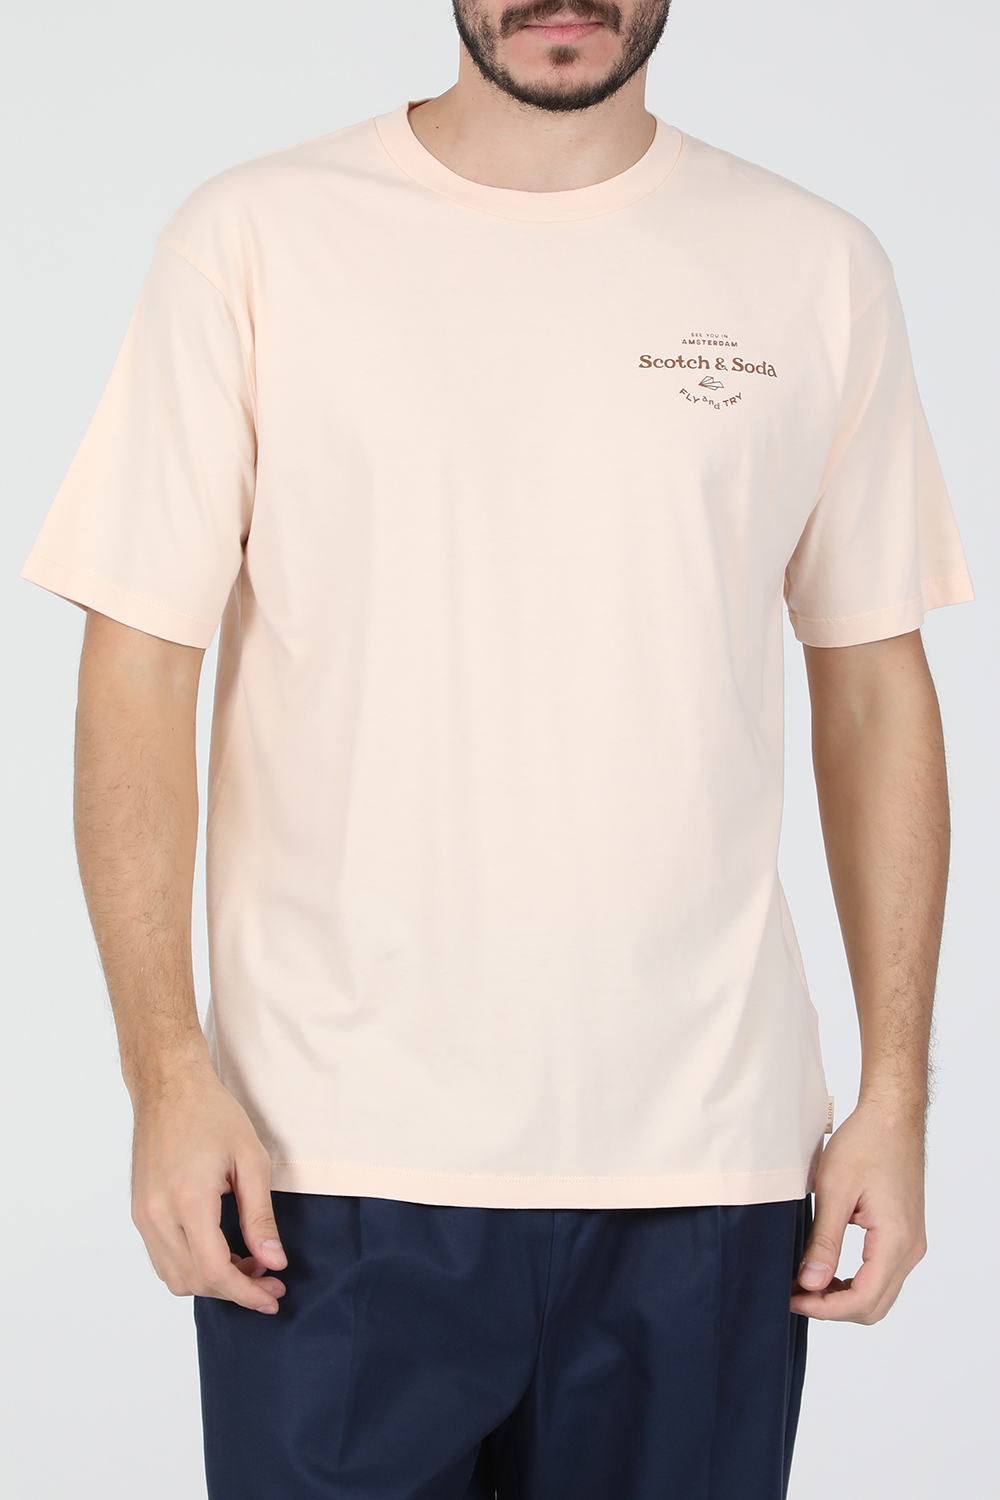 Ανδρικά/Ρούχα/Μπλούζες/Κοντομάνικες SCOTCH & SODA - Ανδρική κοντομάνικη μπλούζα SCOTCH & SODA ροζ